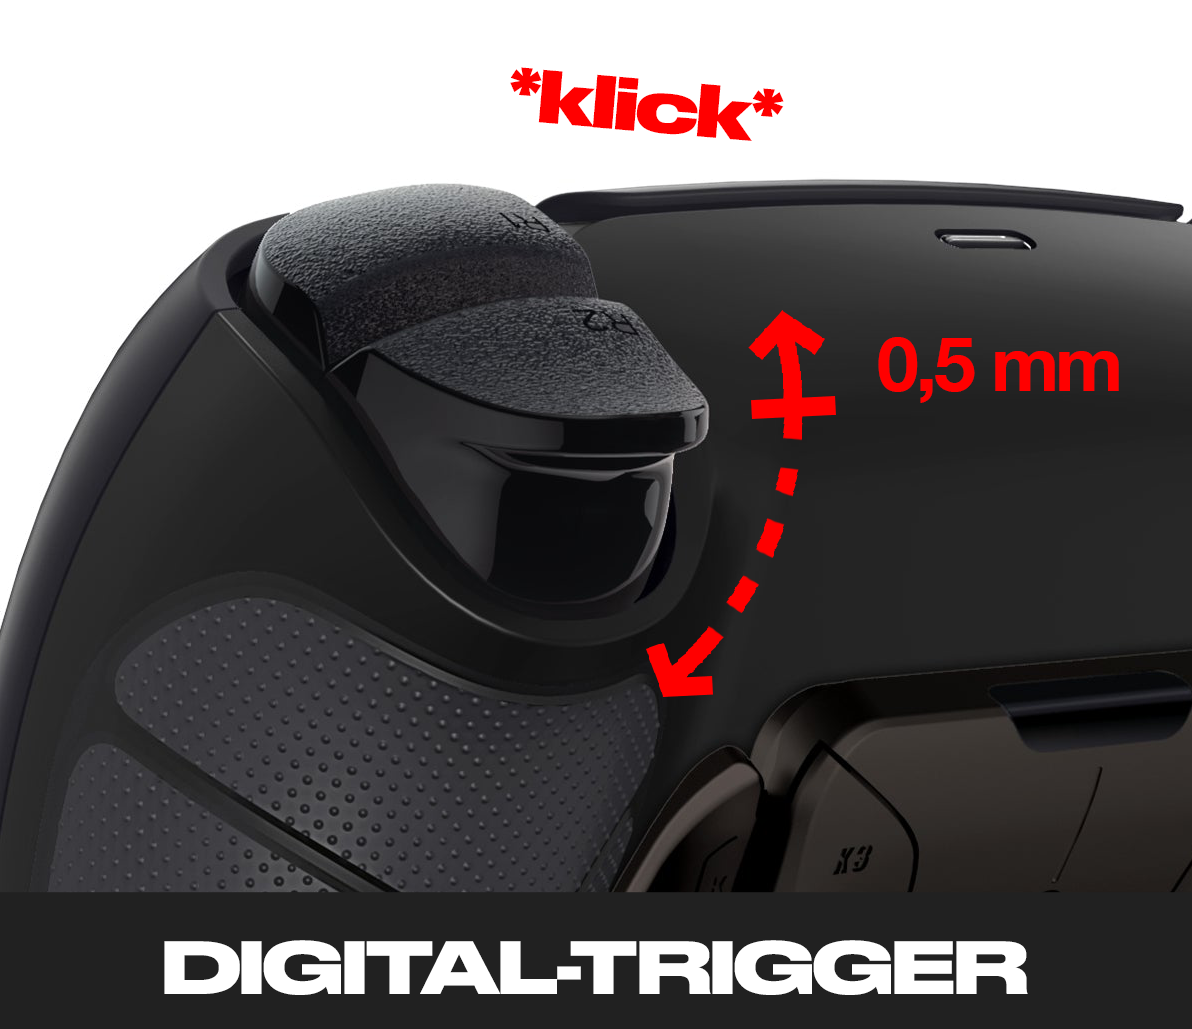 PS5 Pro Controller mit Hall-Effekt Sticks und Paddles 'Midnight-Black'